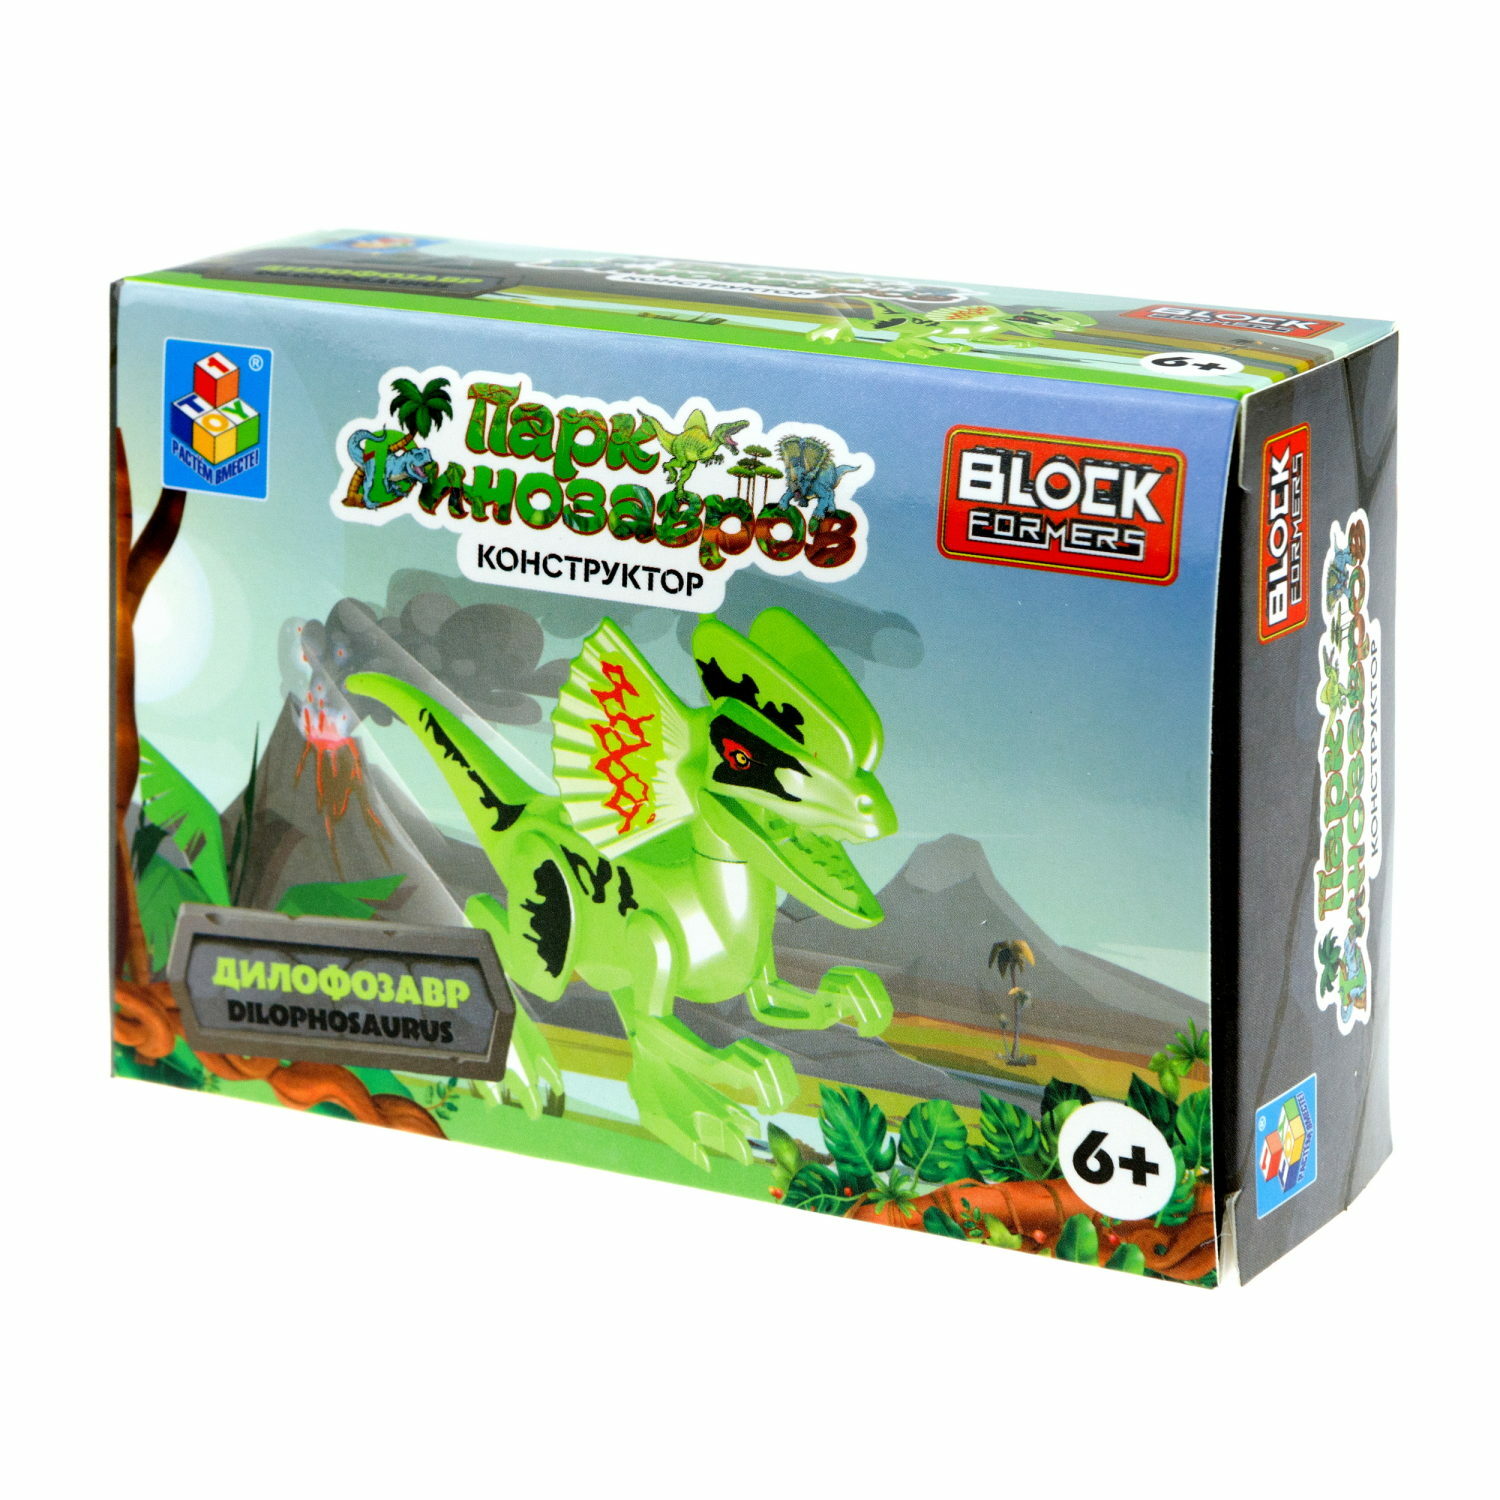 Игрушка сборная Blockformers 1Toy Парк динозавров Дилофозавр Т23229-4 - фото 10